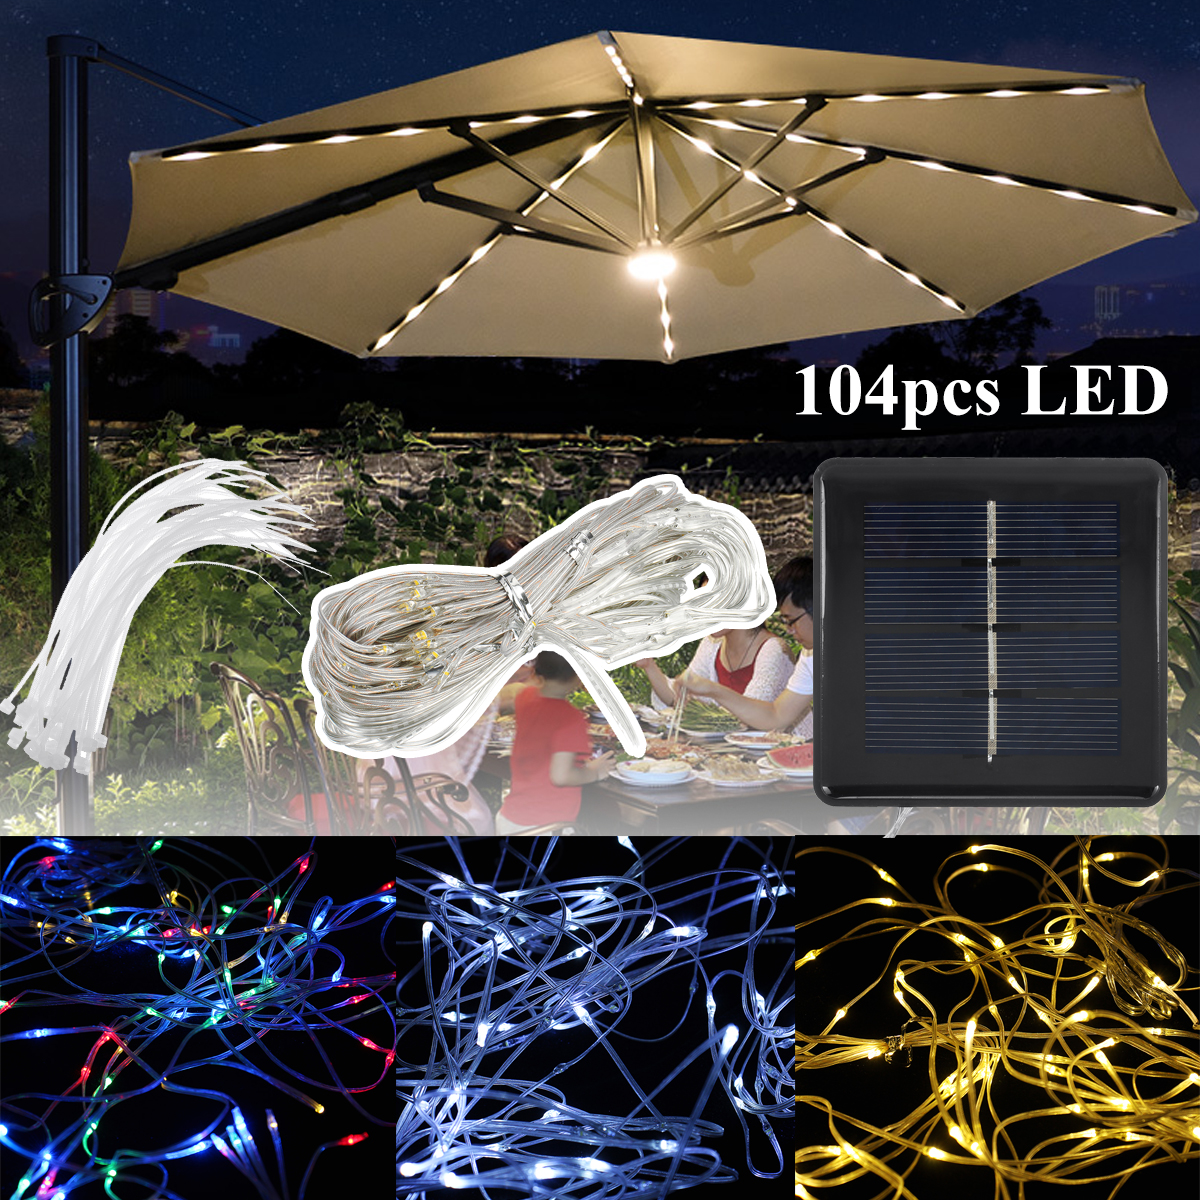 104PCS-LED-8-Mode-Solar-Charging-Solar-LED-String-Light-for-Sun-Umbrella-Garden-1880895-1